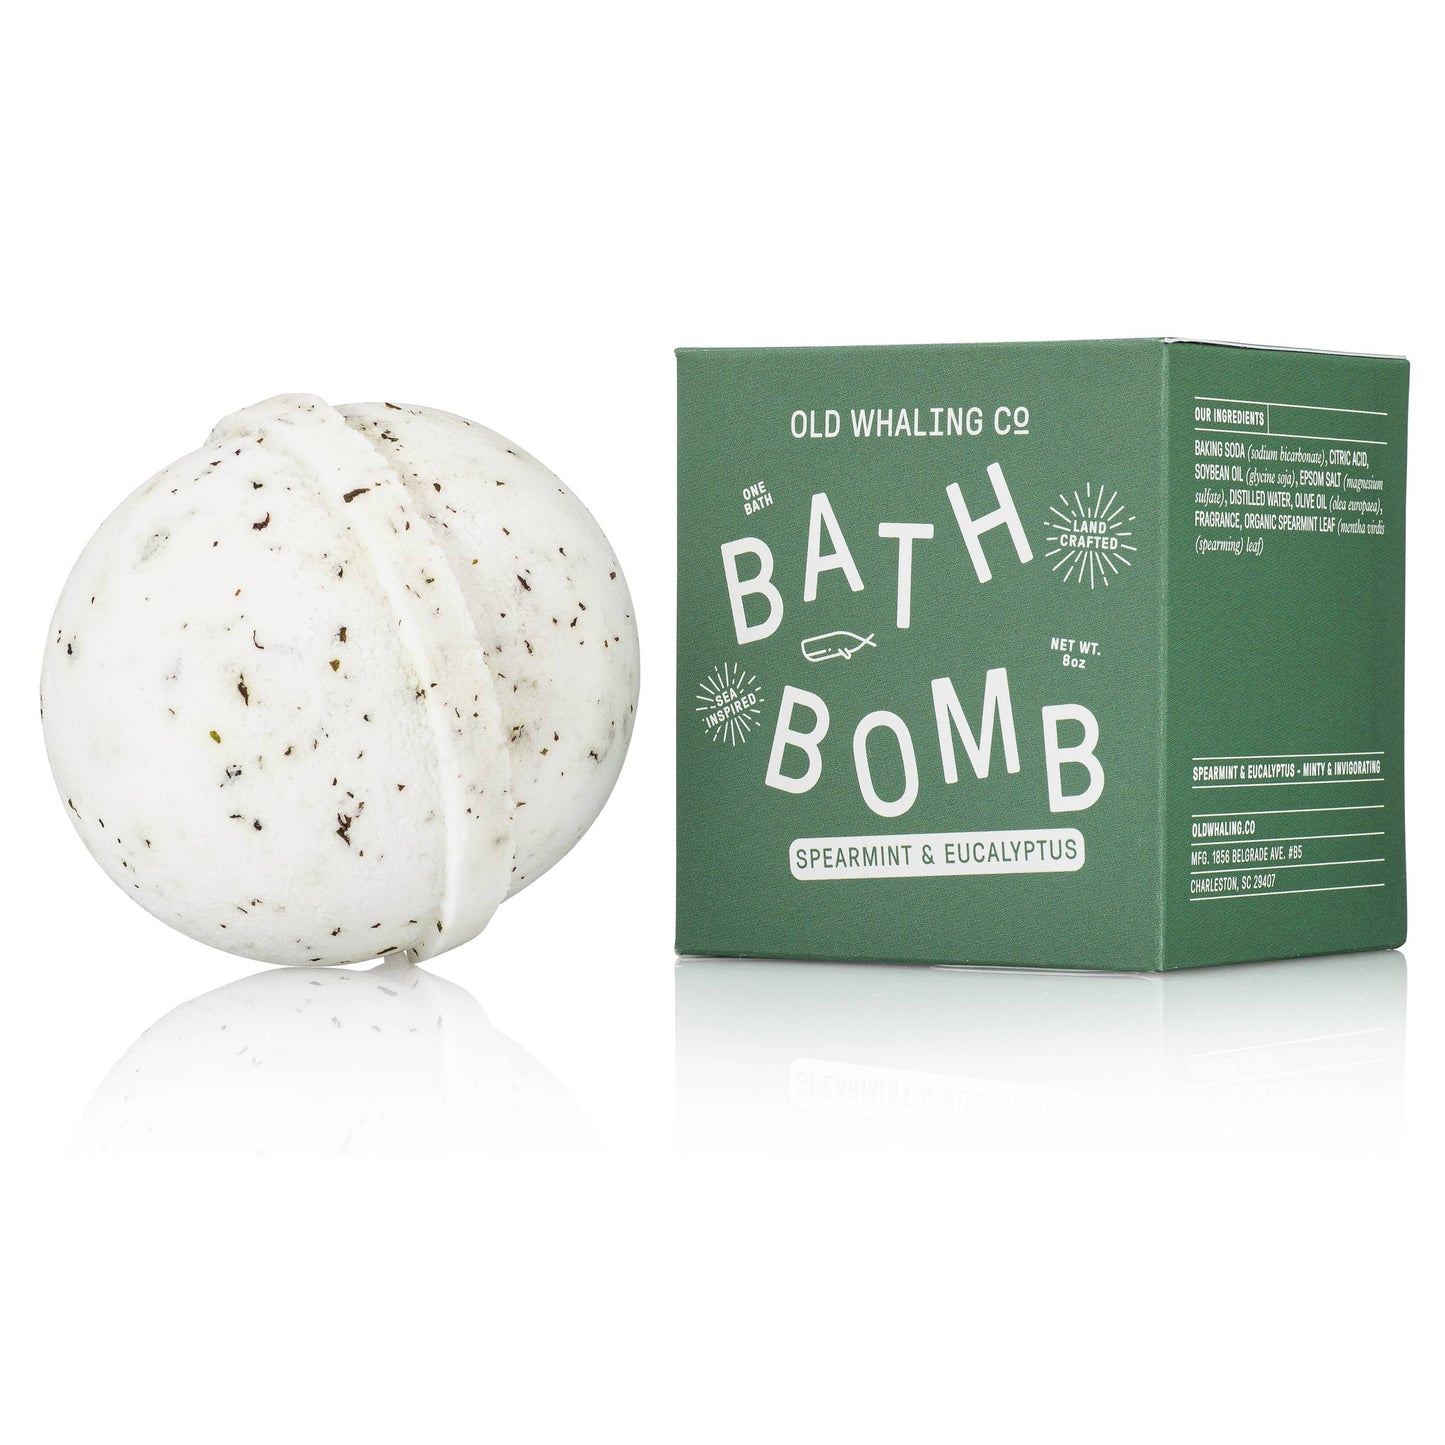 Bath Bomb Spearmint & Eucalyptus